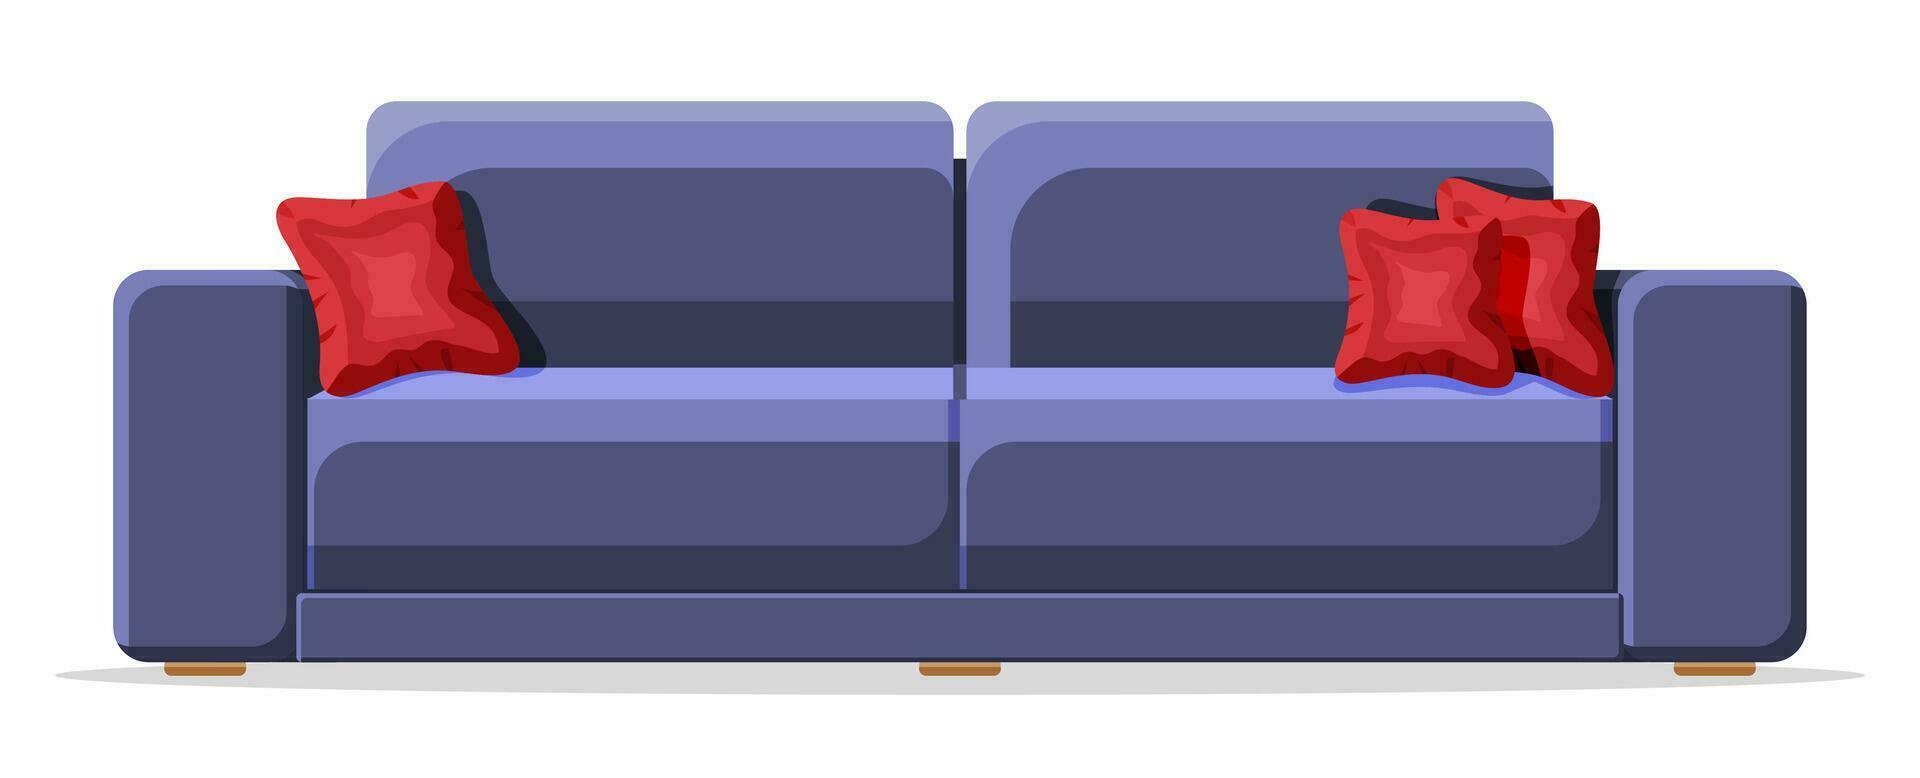 azul sofá con rojo almohada aislado en blanco. vivo habitación mueble. decorado moderno interior elemento. interior articulo para relajarse y trabajar. dibujos animados plano vector ilustración en plano estilo